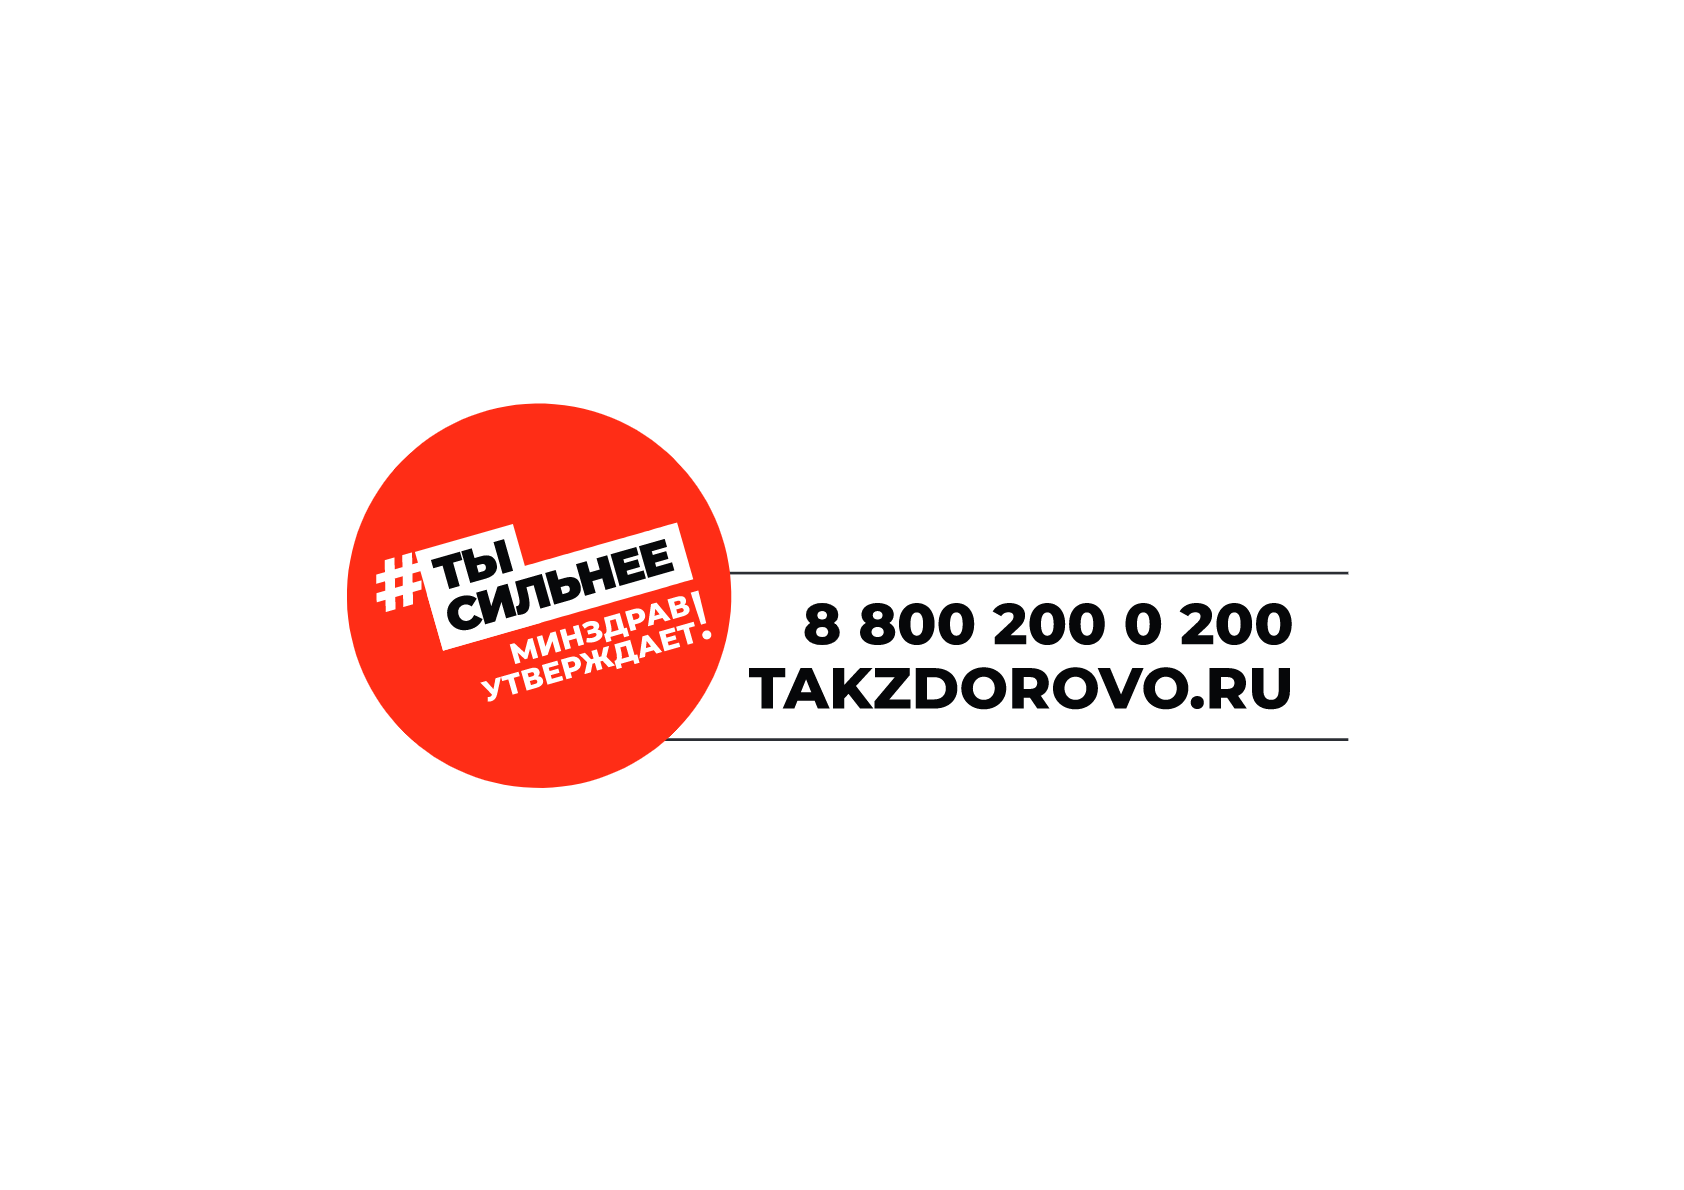 takzdorovo-logo